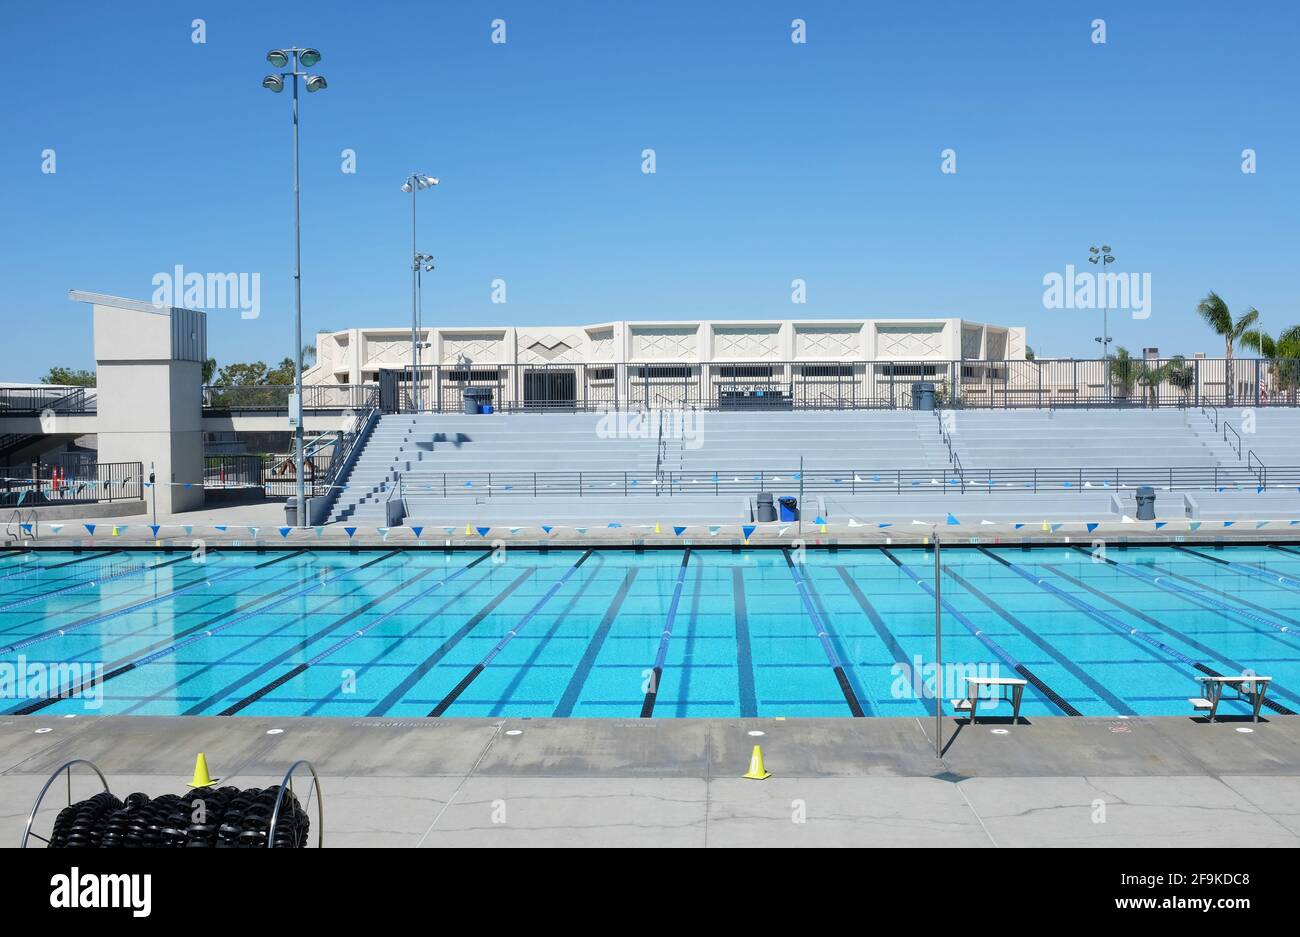 IRVINE, CA - 18. April 2021: William Woollett Aquatics Center. Ein Veranstaltungsort für lokale, regionale und nationale Wettkampfveranstaltungen mit zwei 50-Meter-Pools Stockfoto